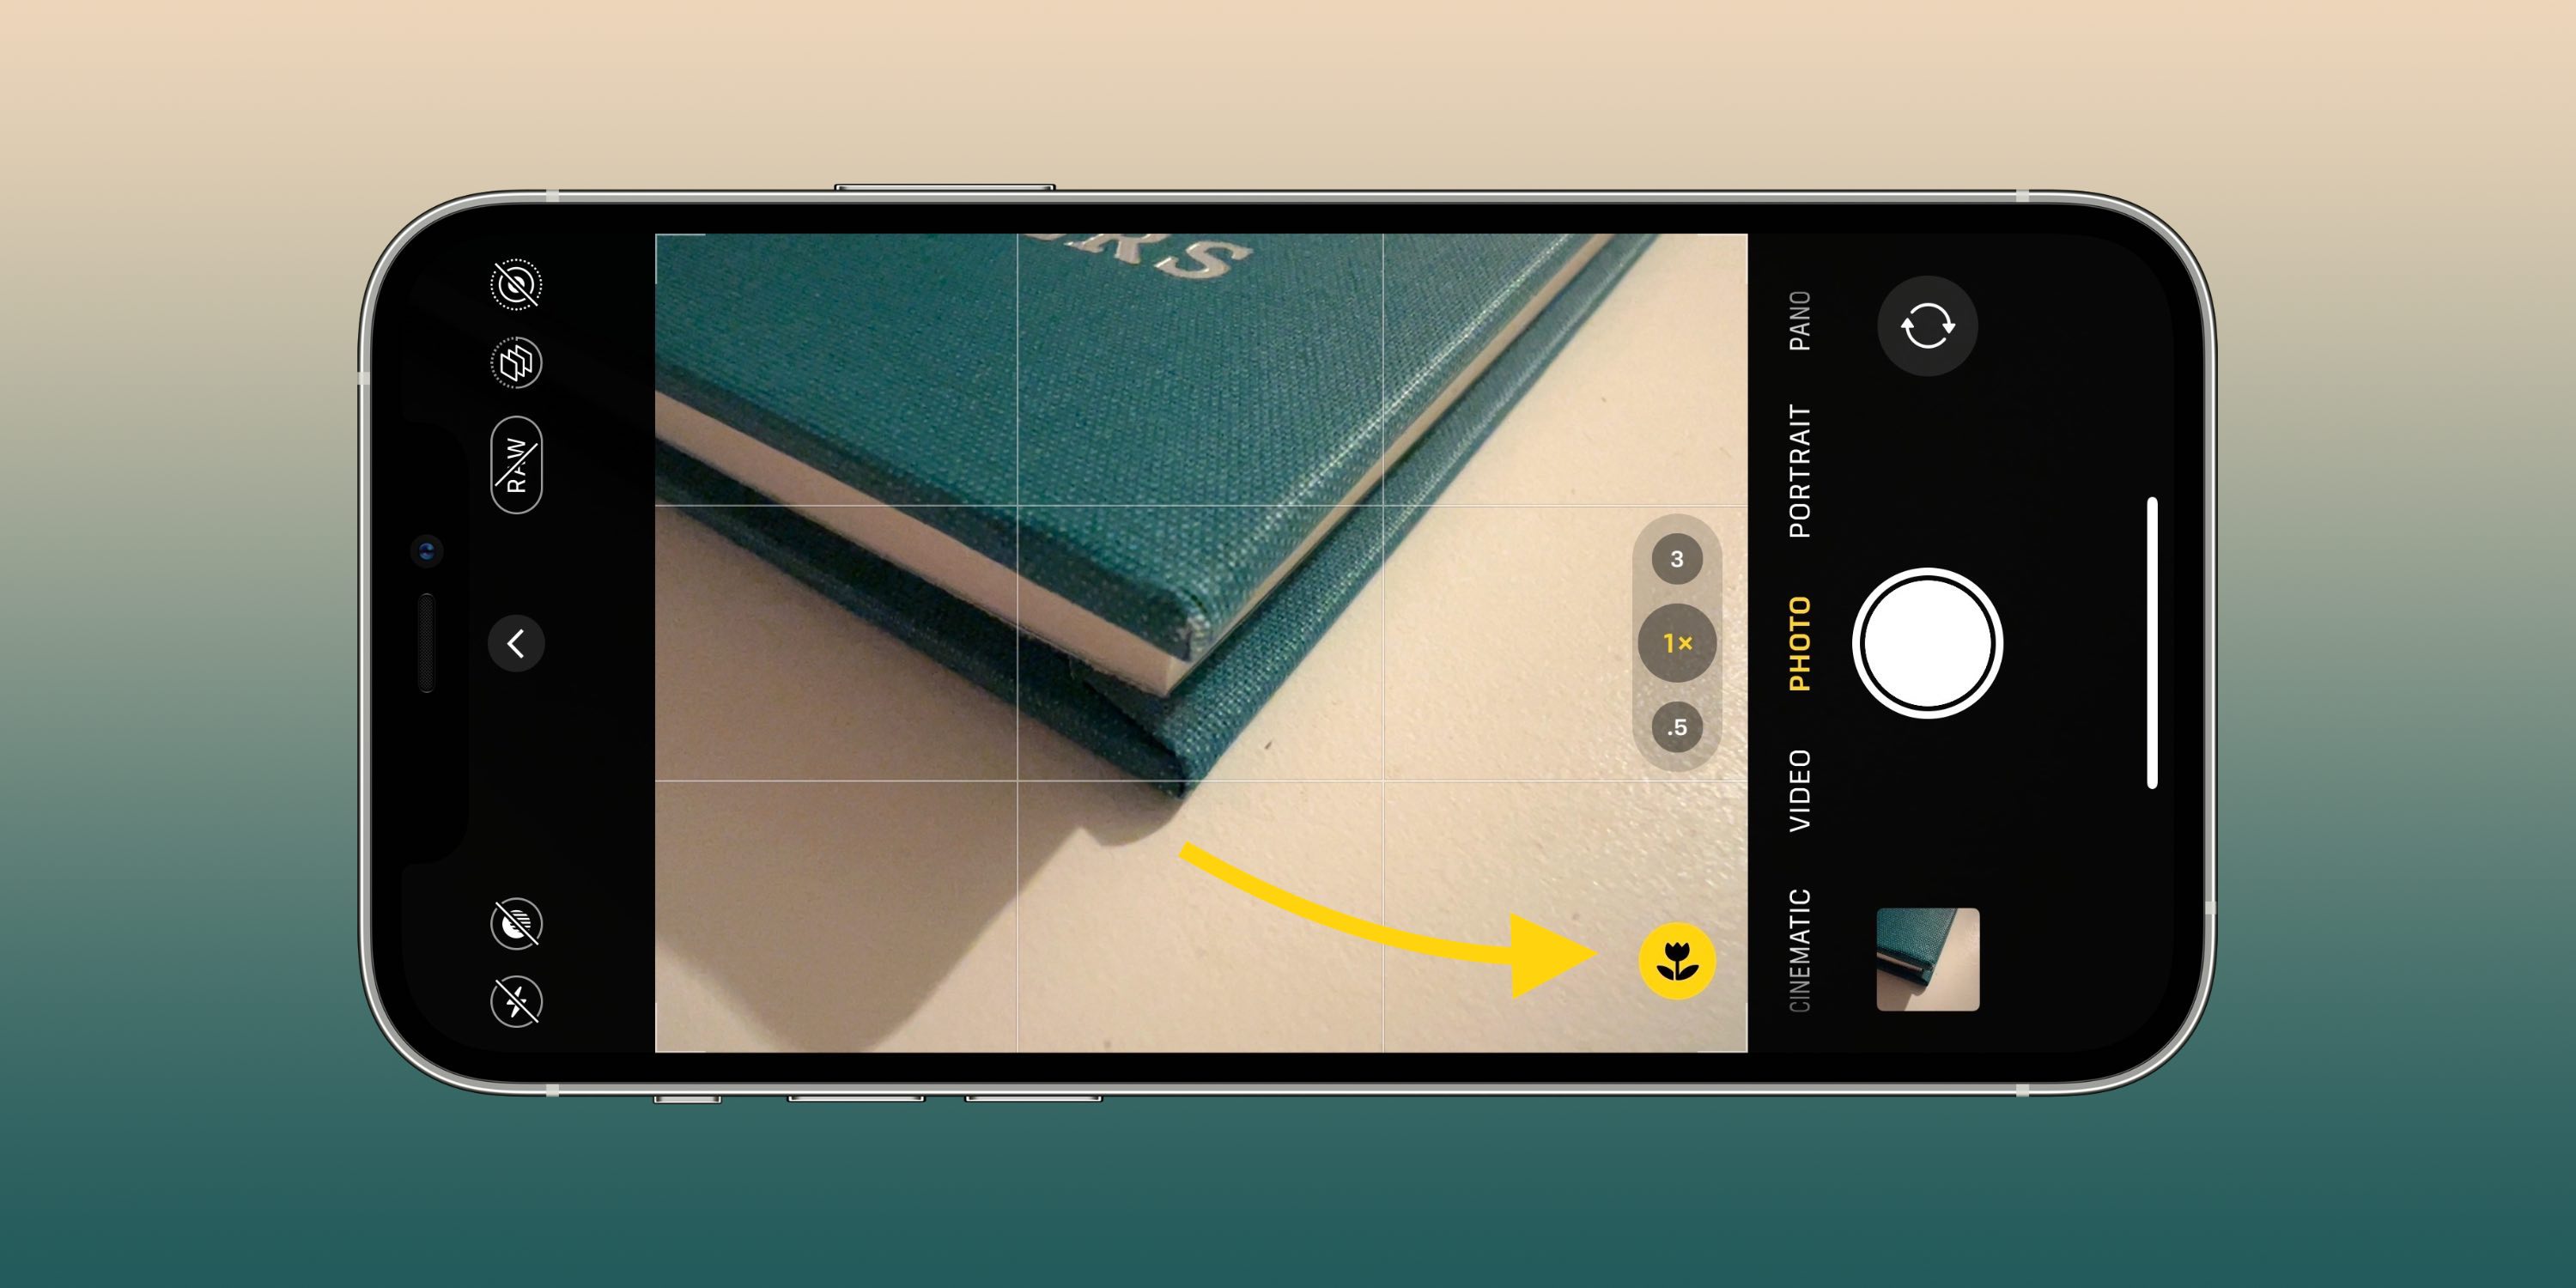 Estas configuraciones de la cámara pueden ayudarlo a tomar mejores fotos y videos en su iPhone